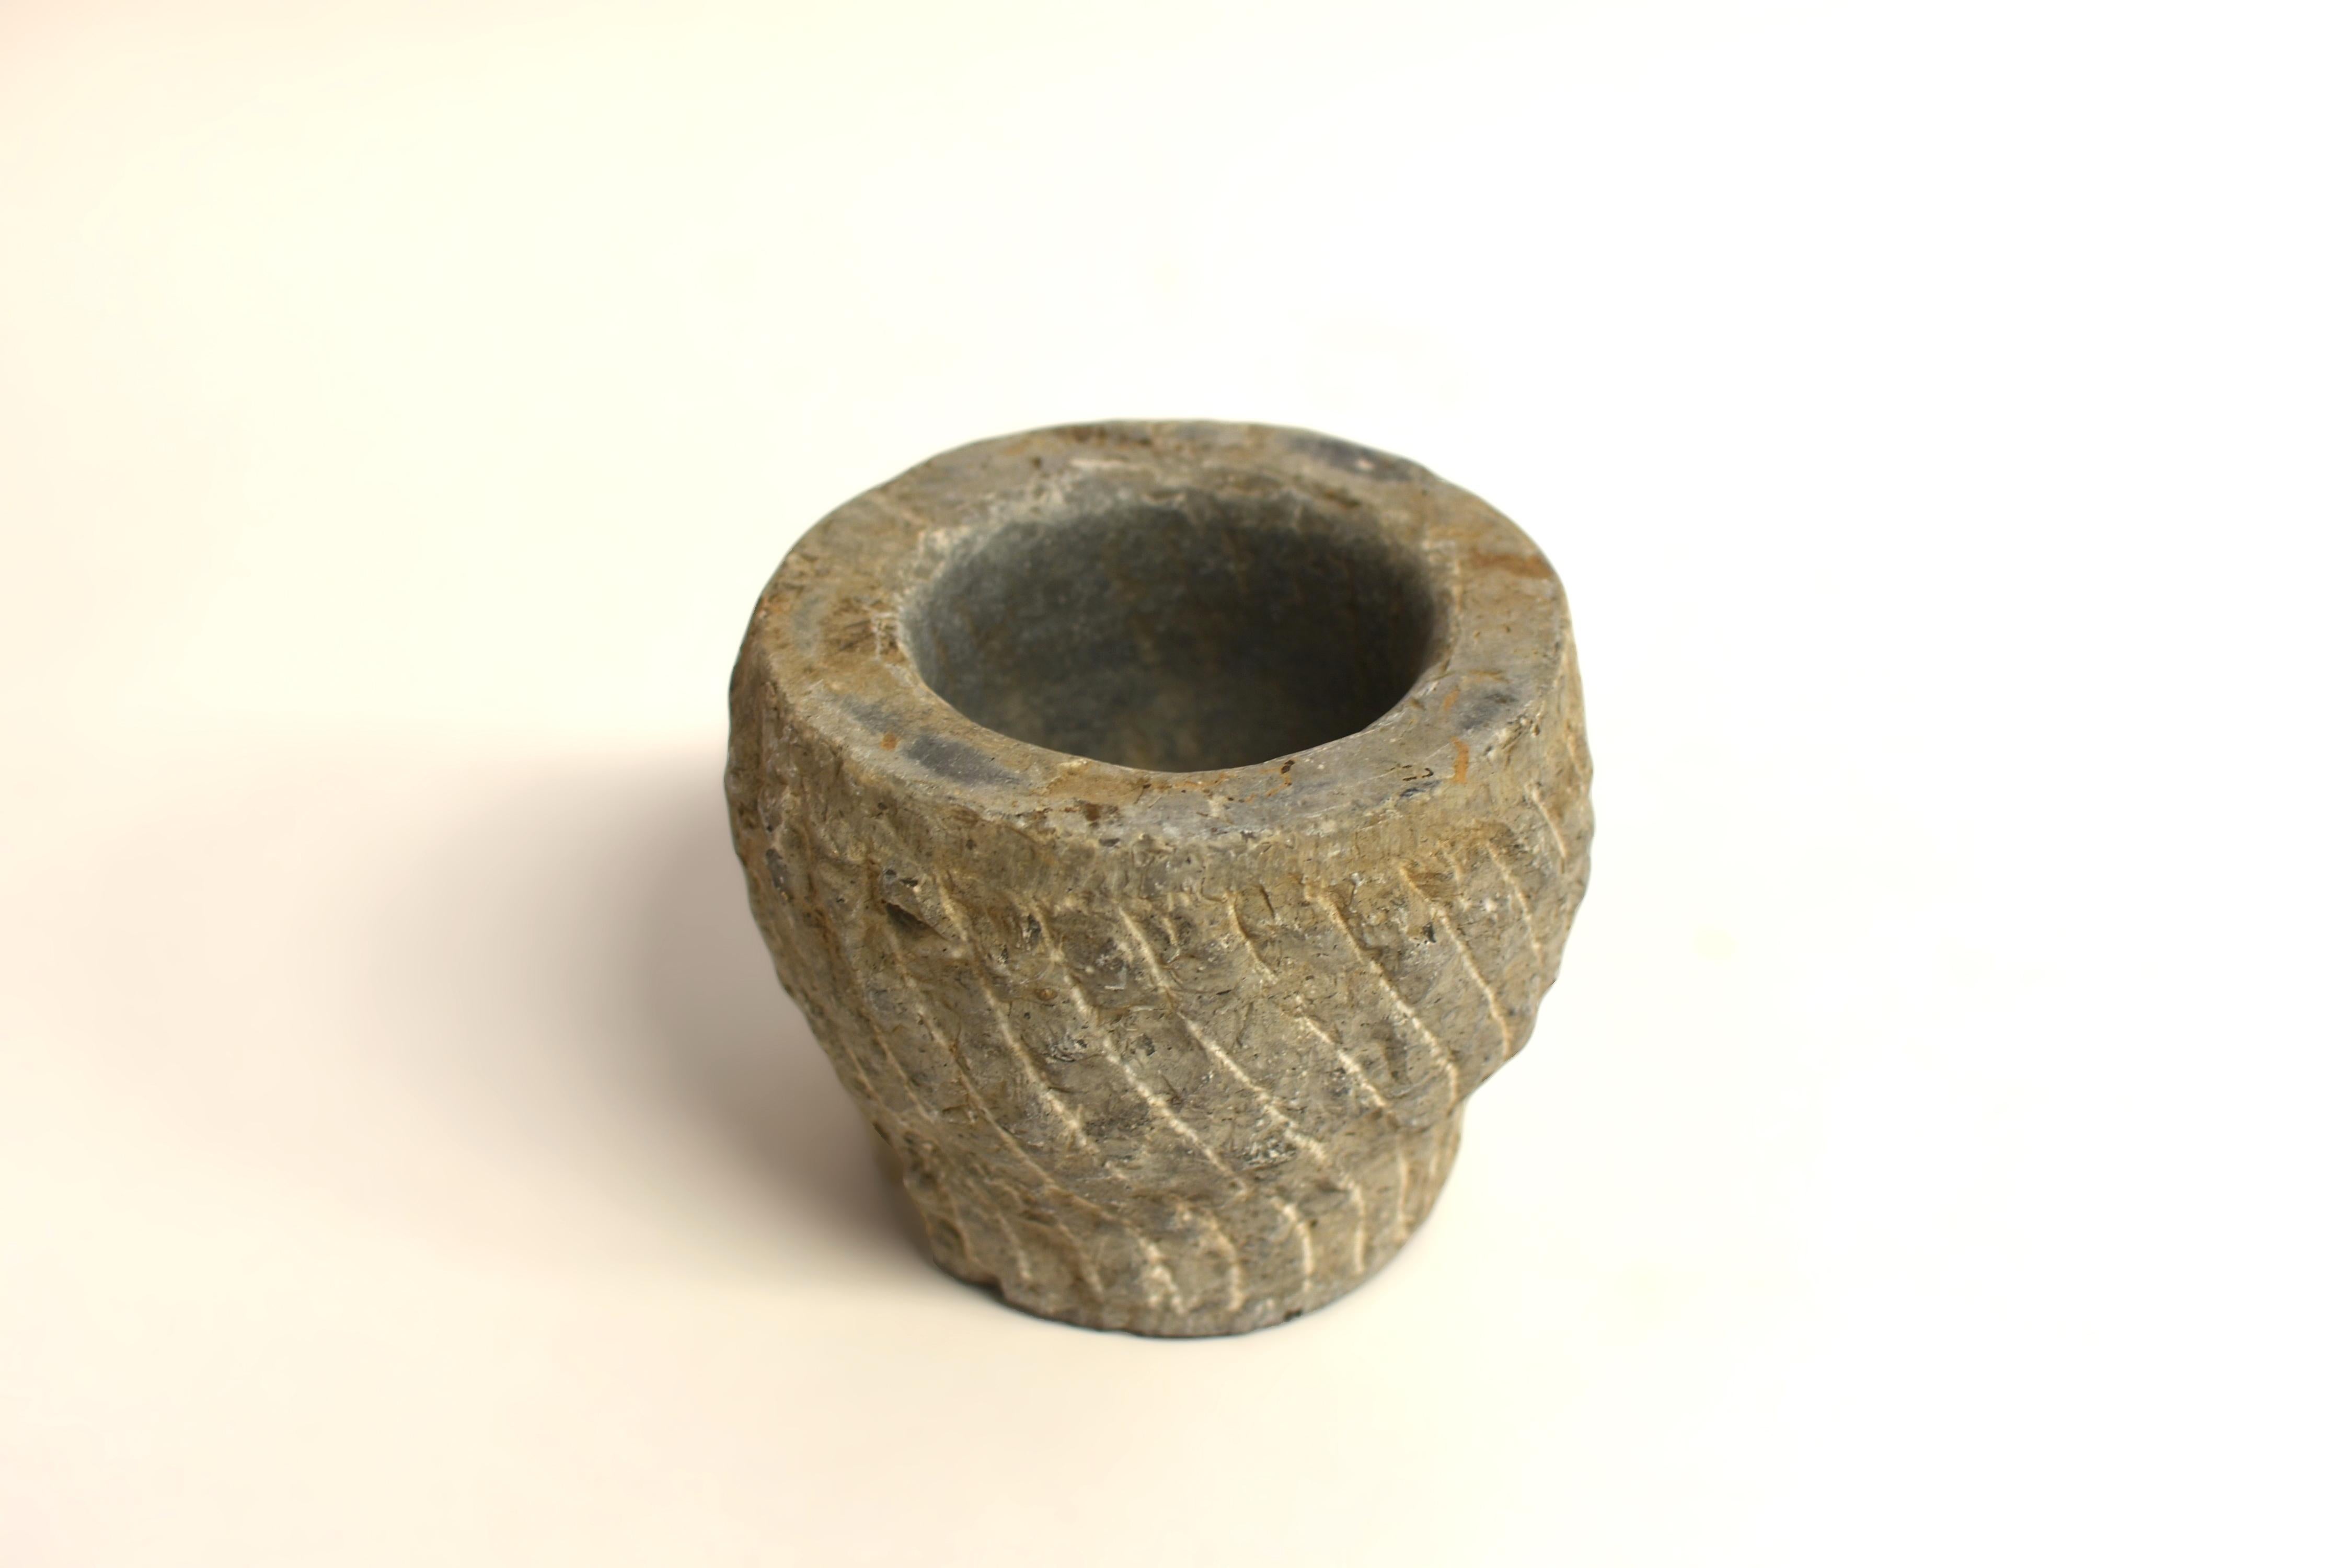 Aus Nordchina stammt ein Stück von großem Altertum. Die Schale aus blauem Granit aus dem 18. Jahrhundert, von Hand geschnitten und geschnitzt, hat eine konische Form mit spiralförmigen Einschnitten und endet auf einem runden Sockel. Die Spiralen